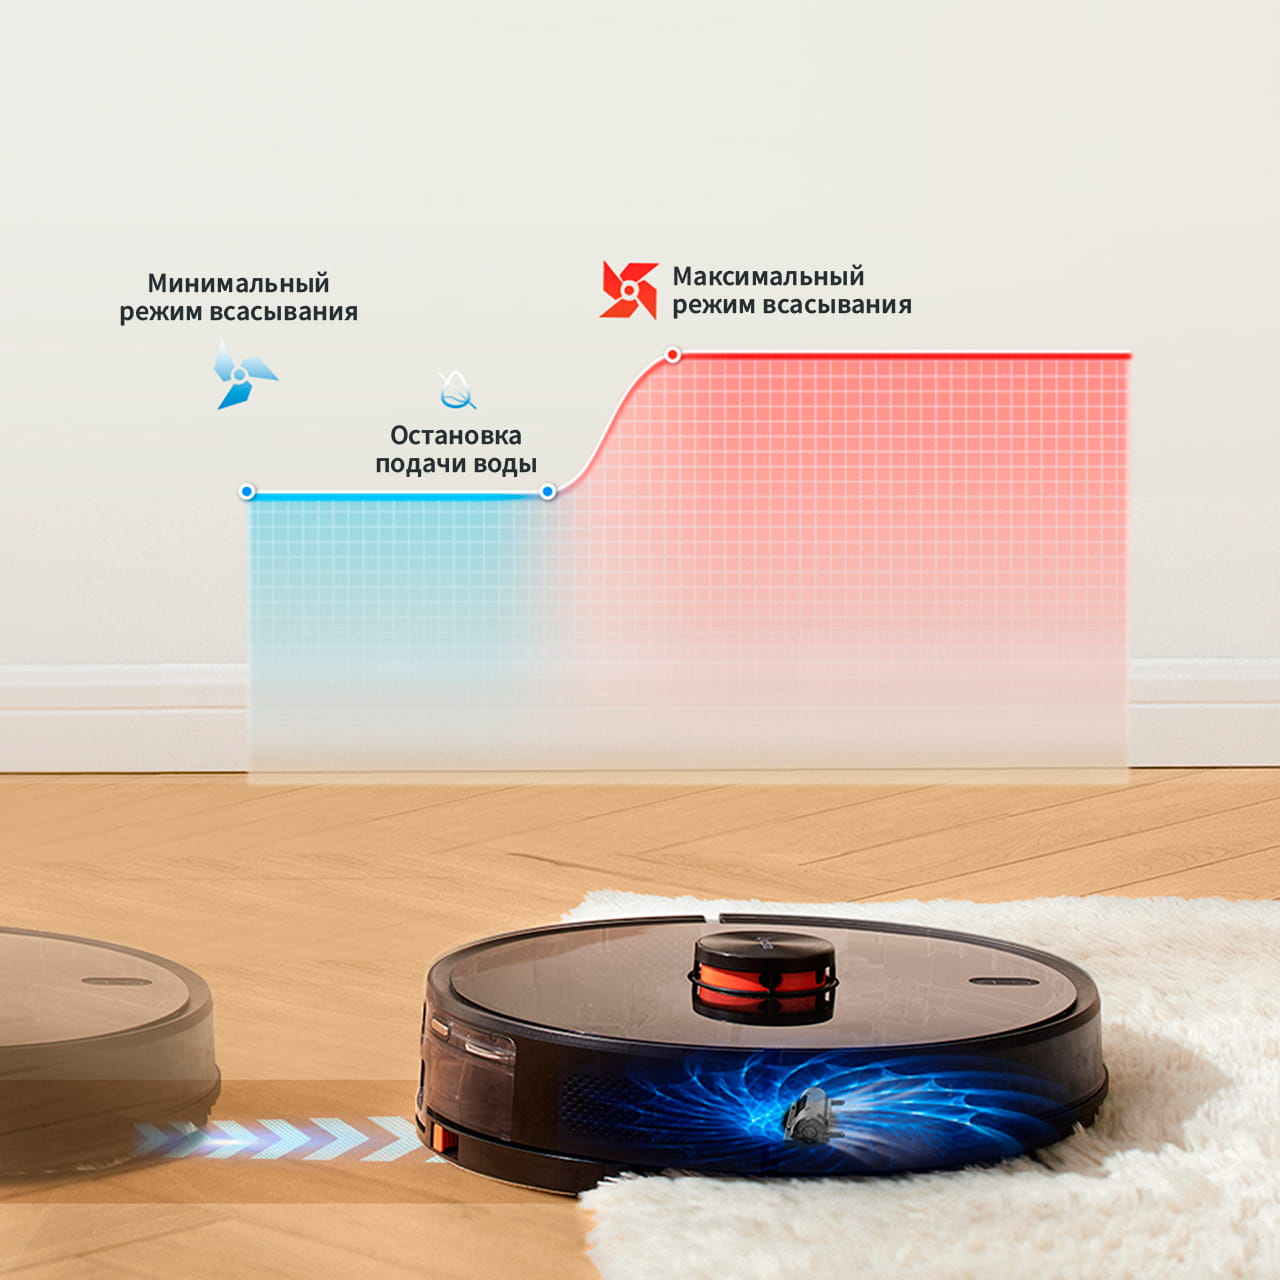 Купить робот-пылесос с функцией обнаружения ковровых покрытий Lydsto R1 чёрного цвета у официального дилера